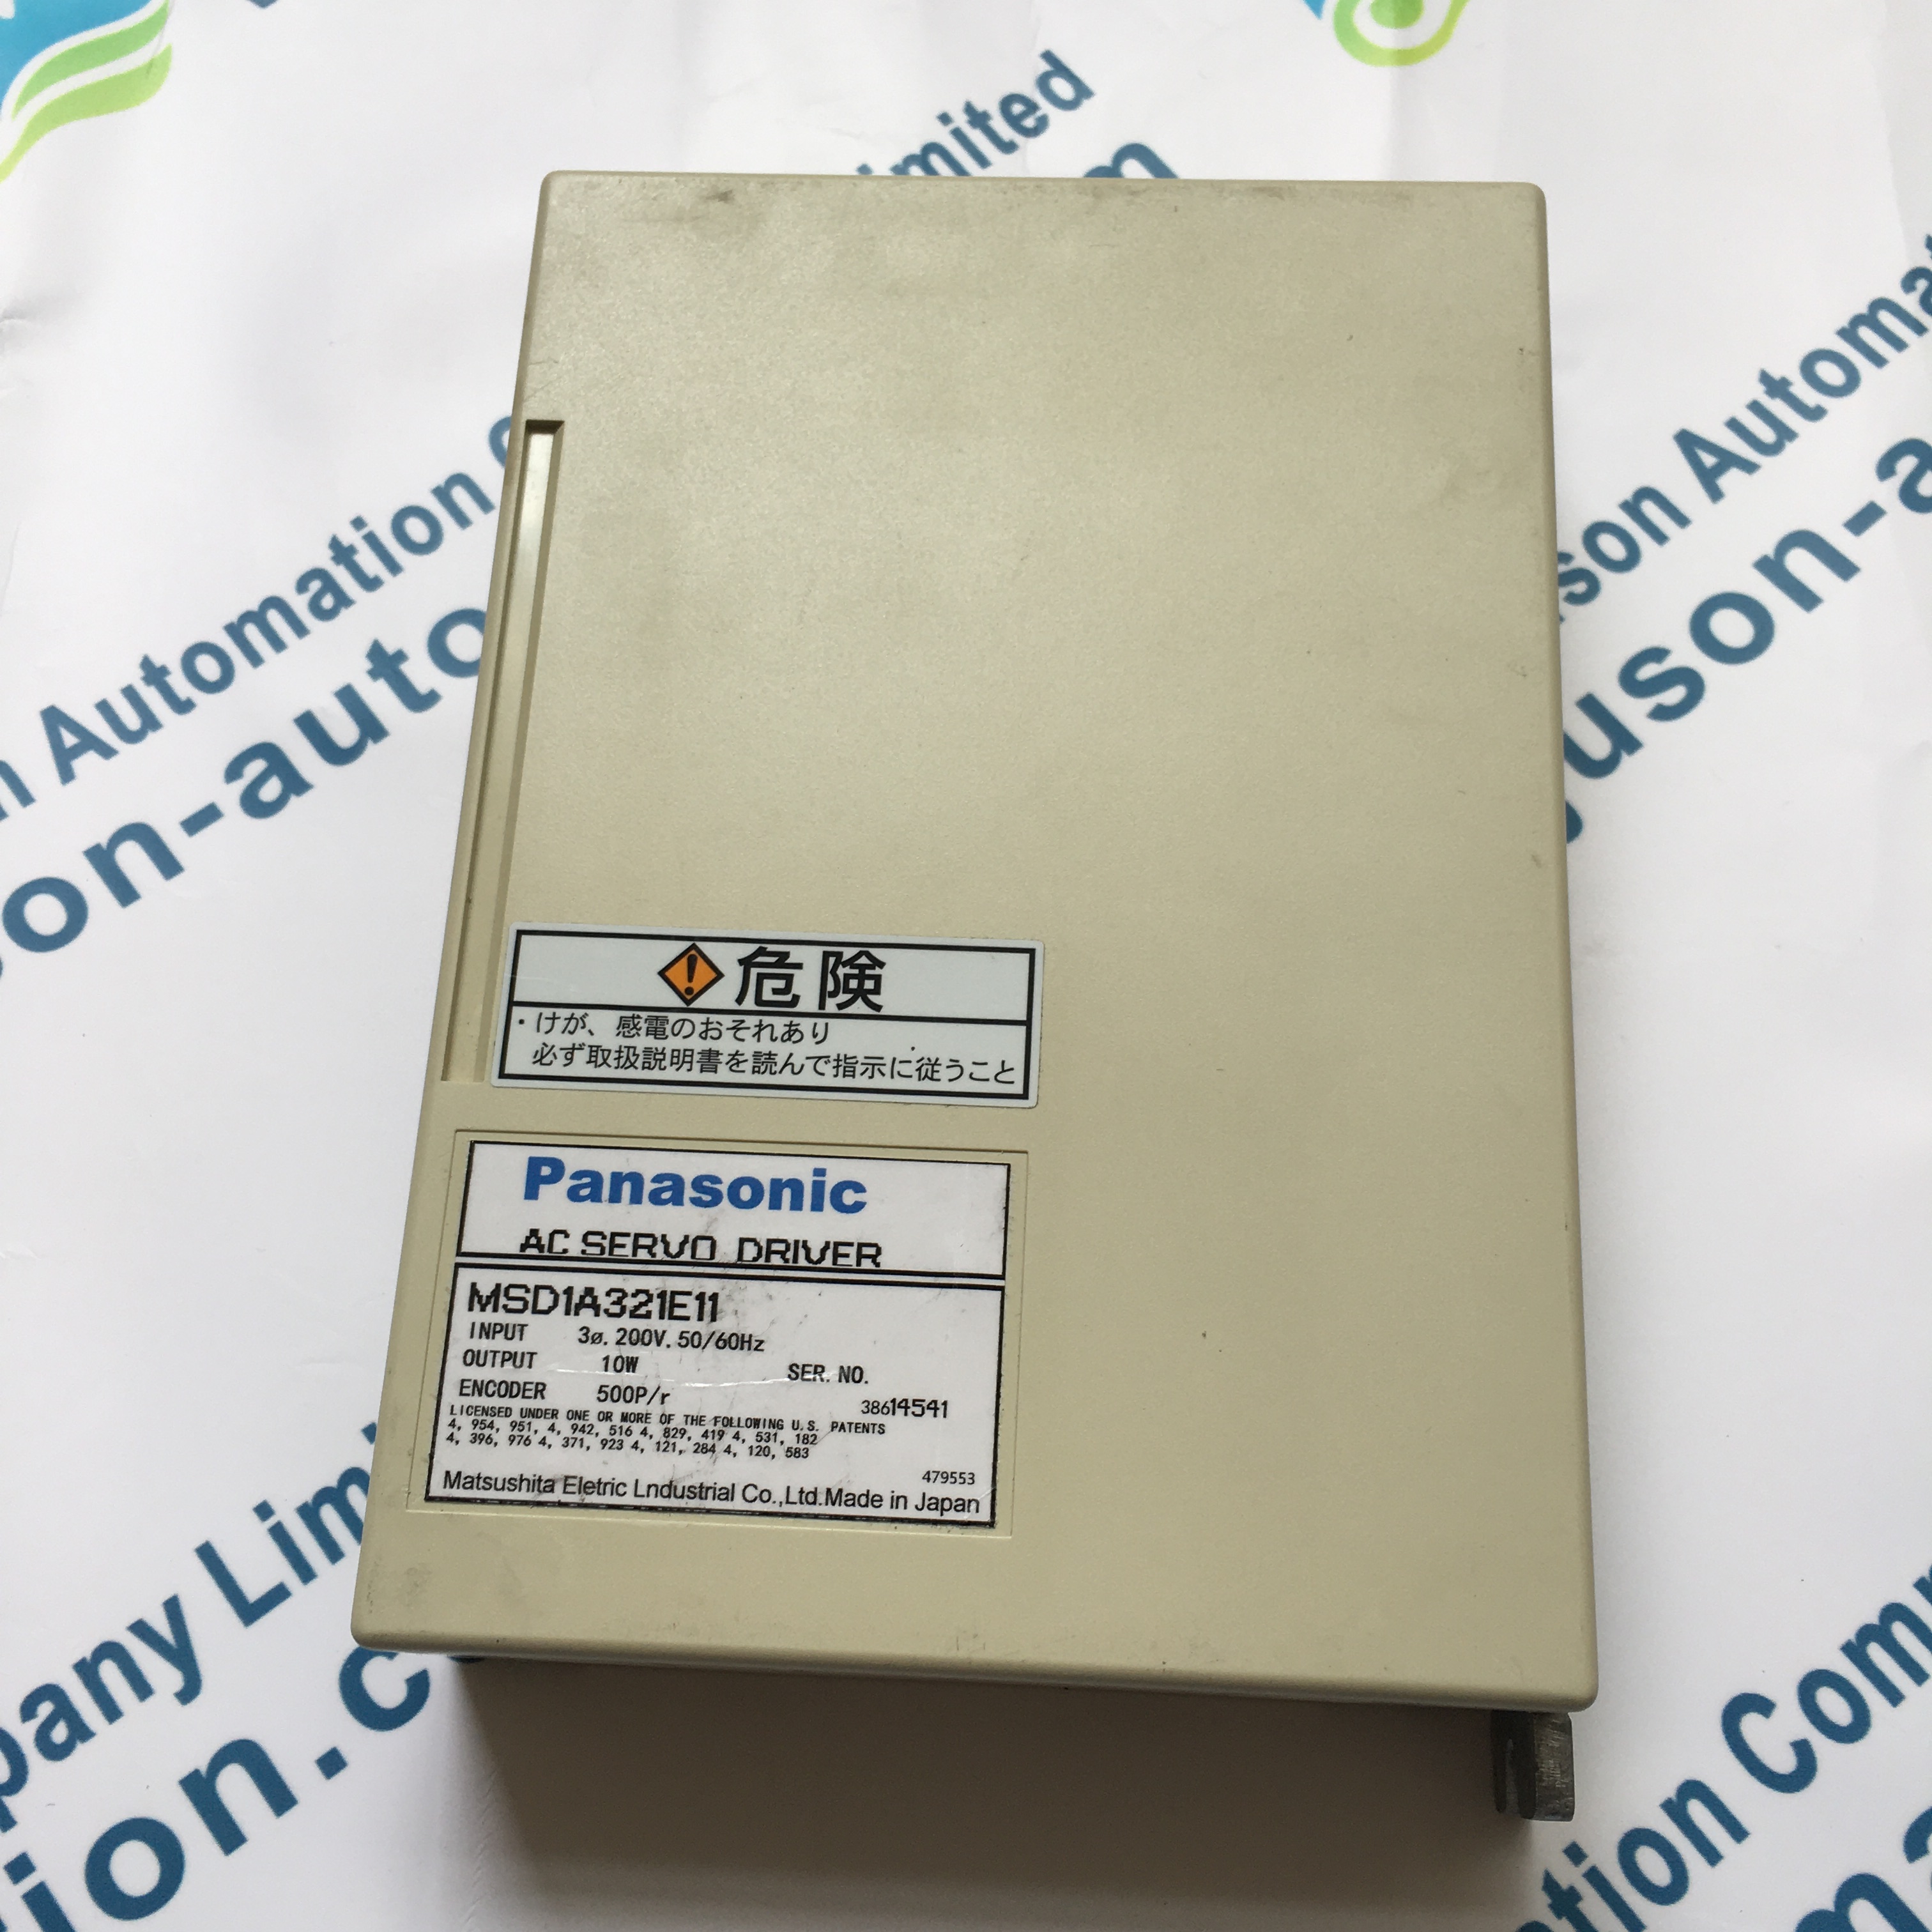 Panasonic MSD1A321E11 server Driver